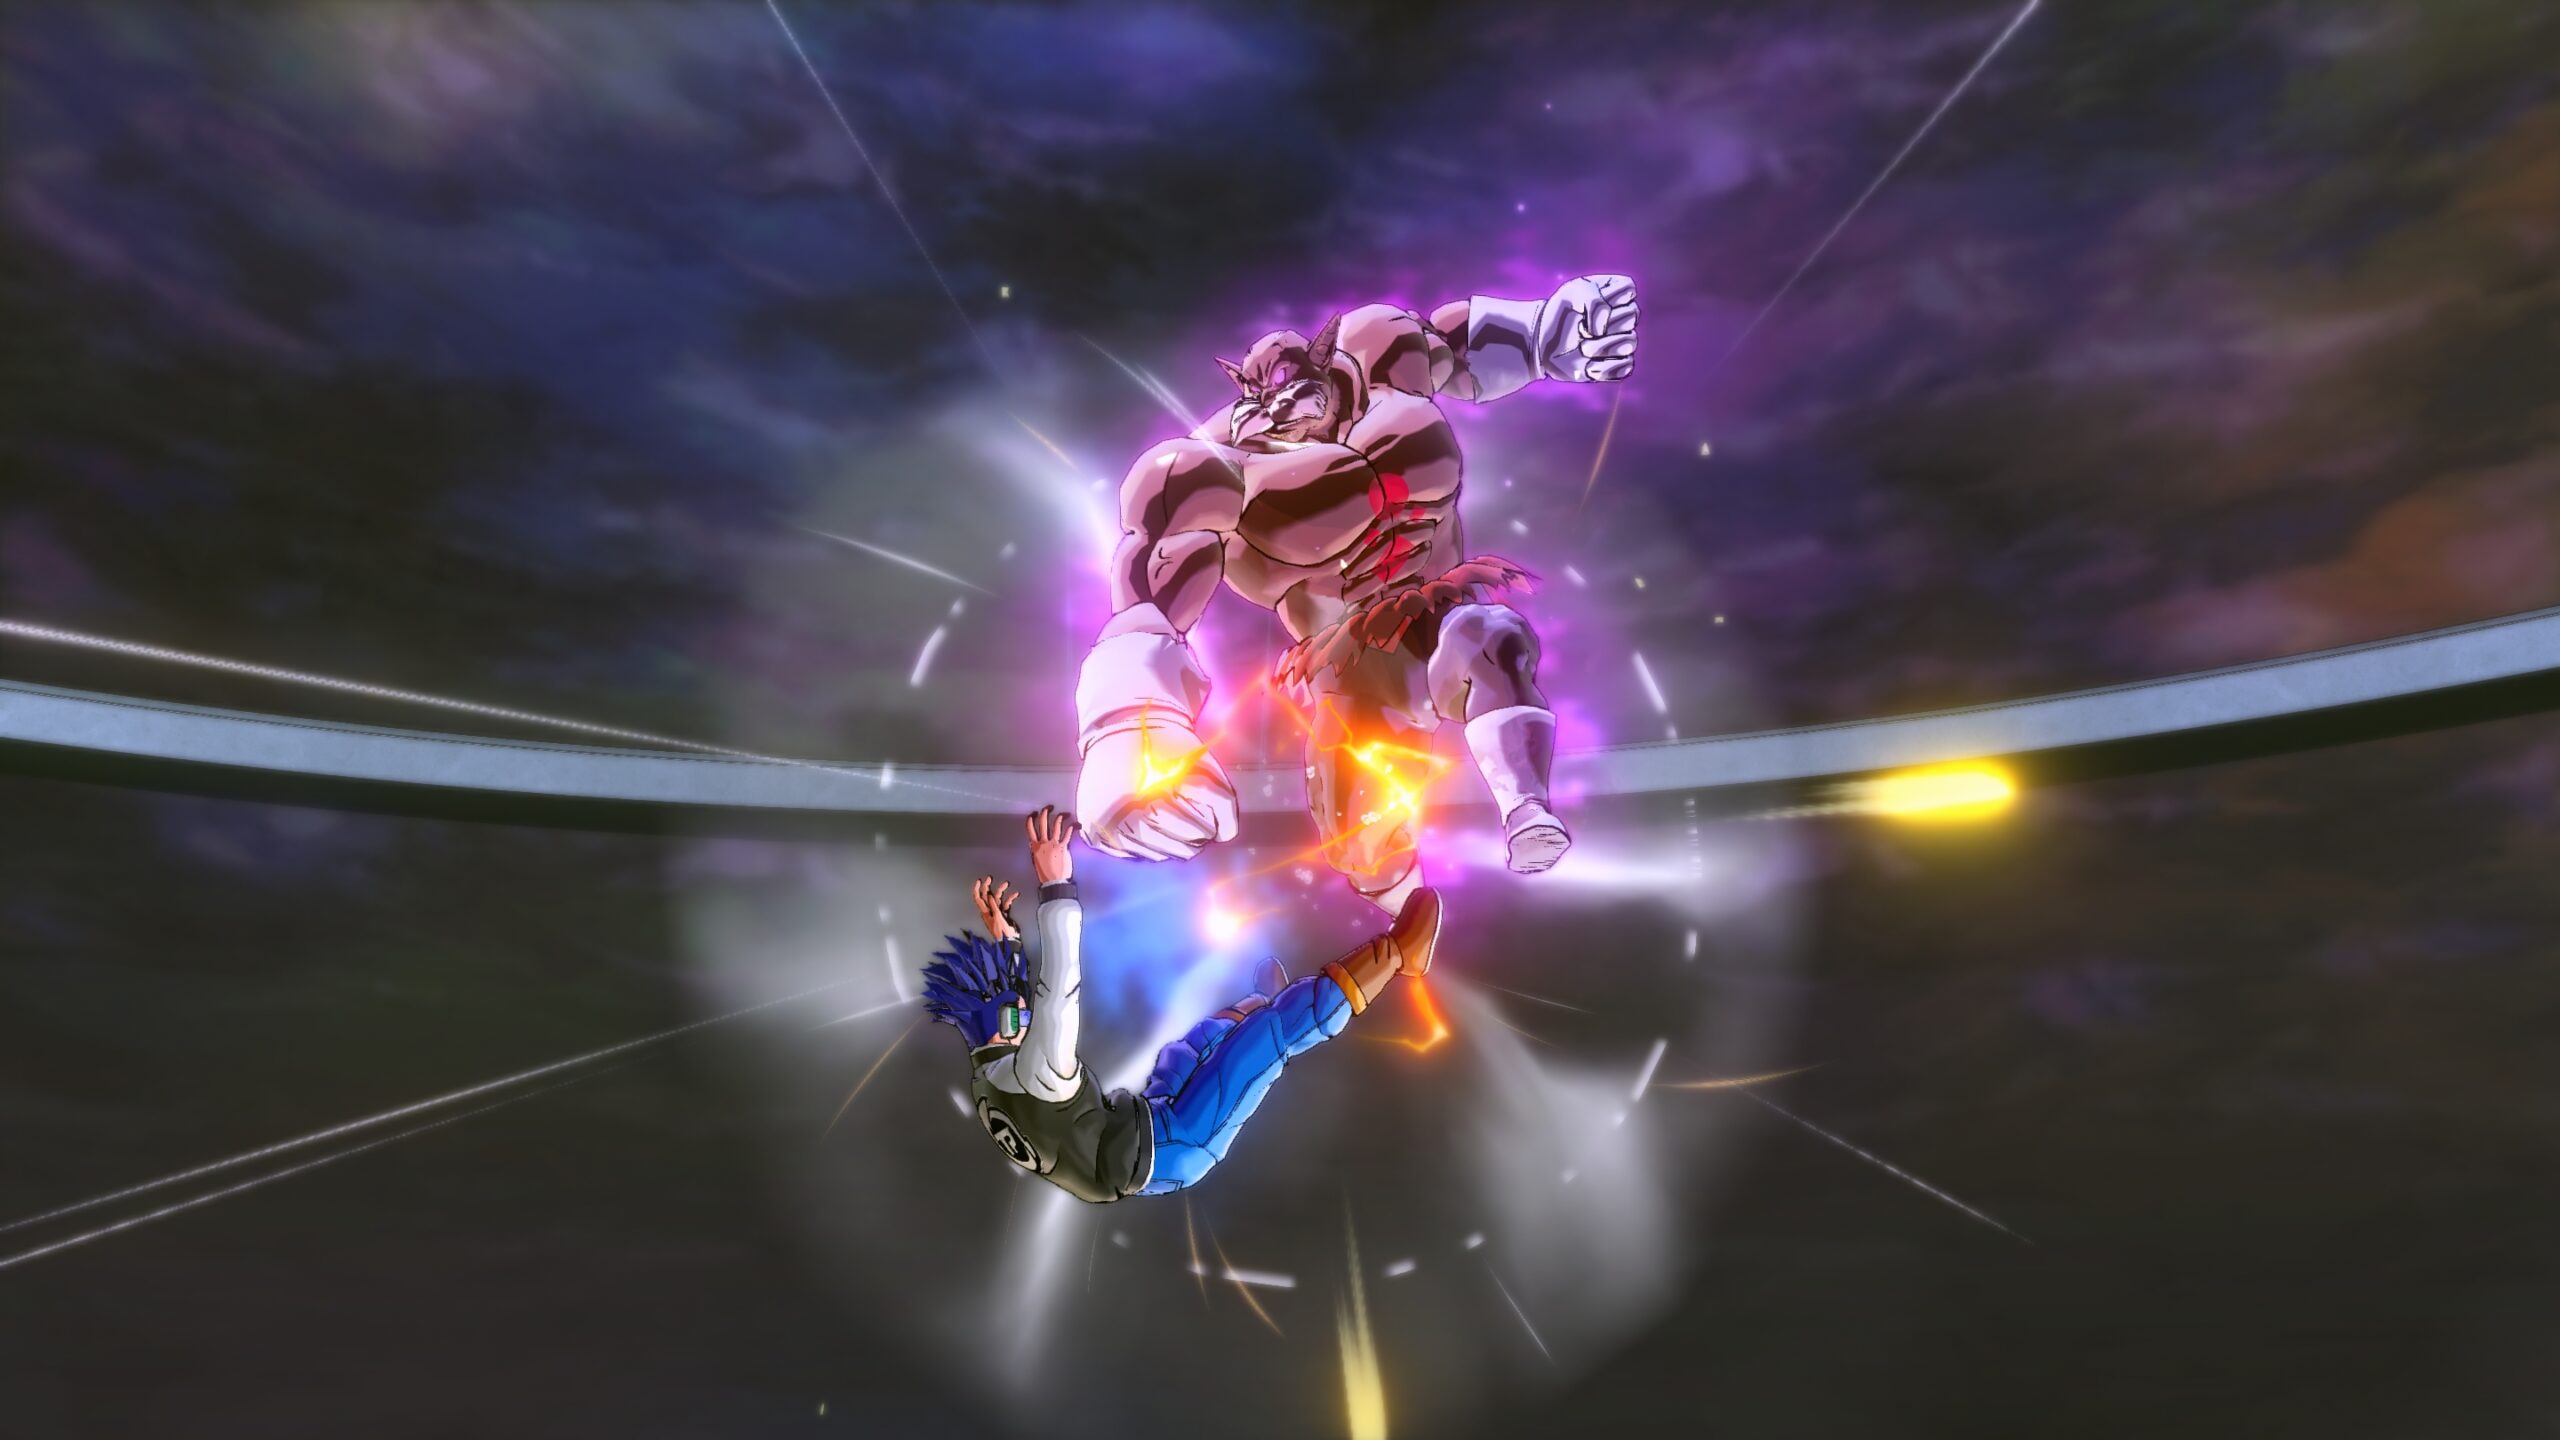 ドラゴンボール ゼノバース2 のdlcキャラクター トッポ 破壊神モード のスクリーンショットが公開